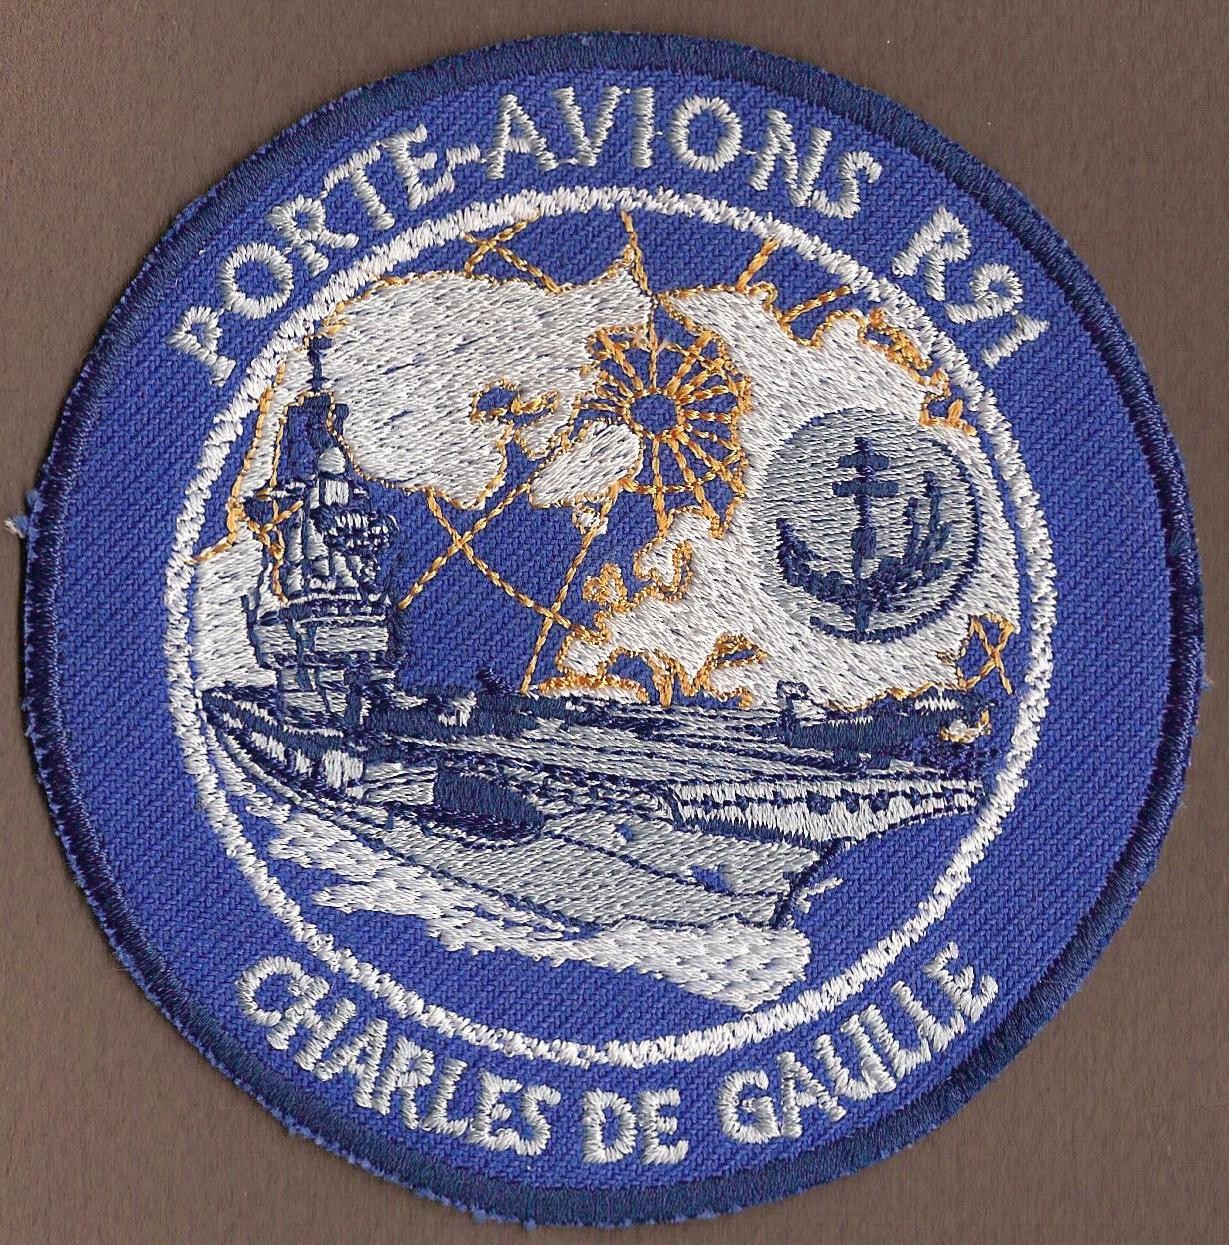 PA Charles de Gaulle R91 - mod 1